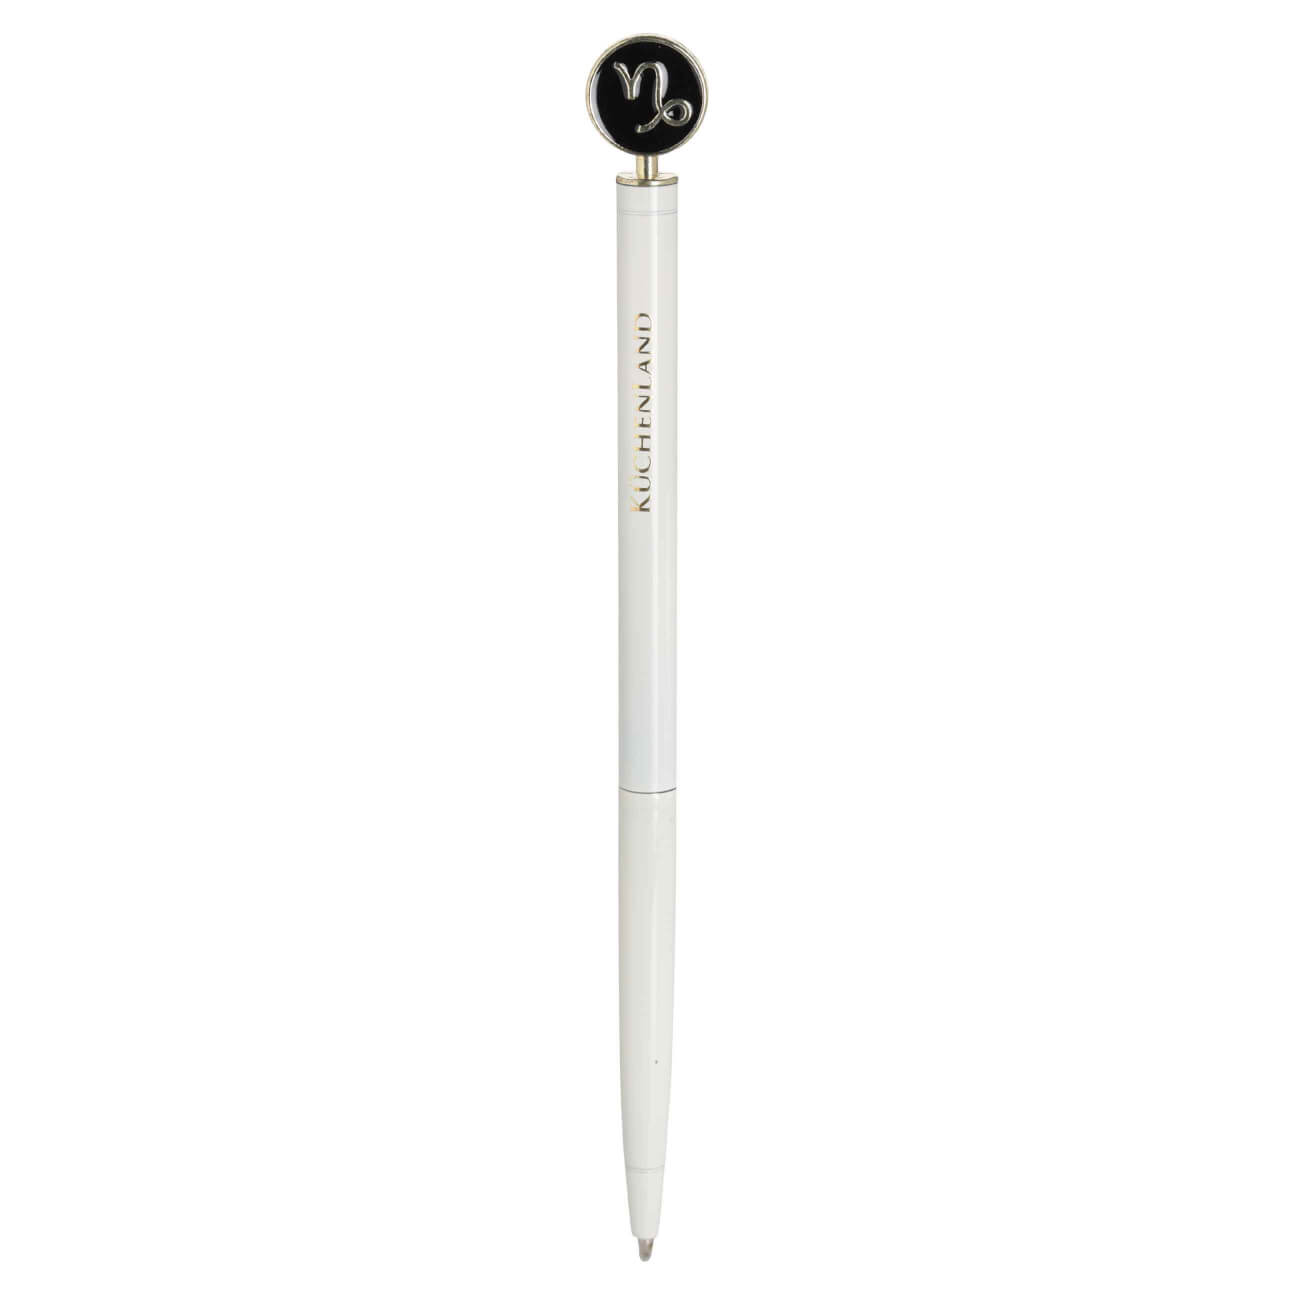 Ручка шариковая, 15 см, с фигуркой, сталь, молочно-золотистая, Козерог, Zodiac